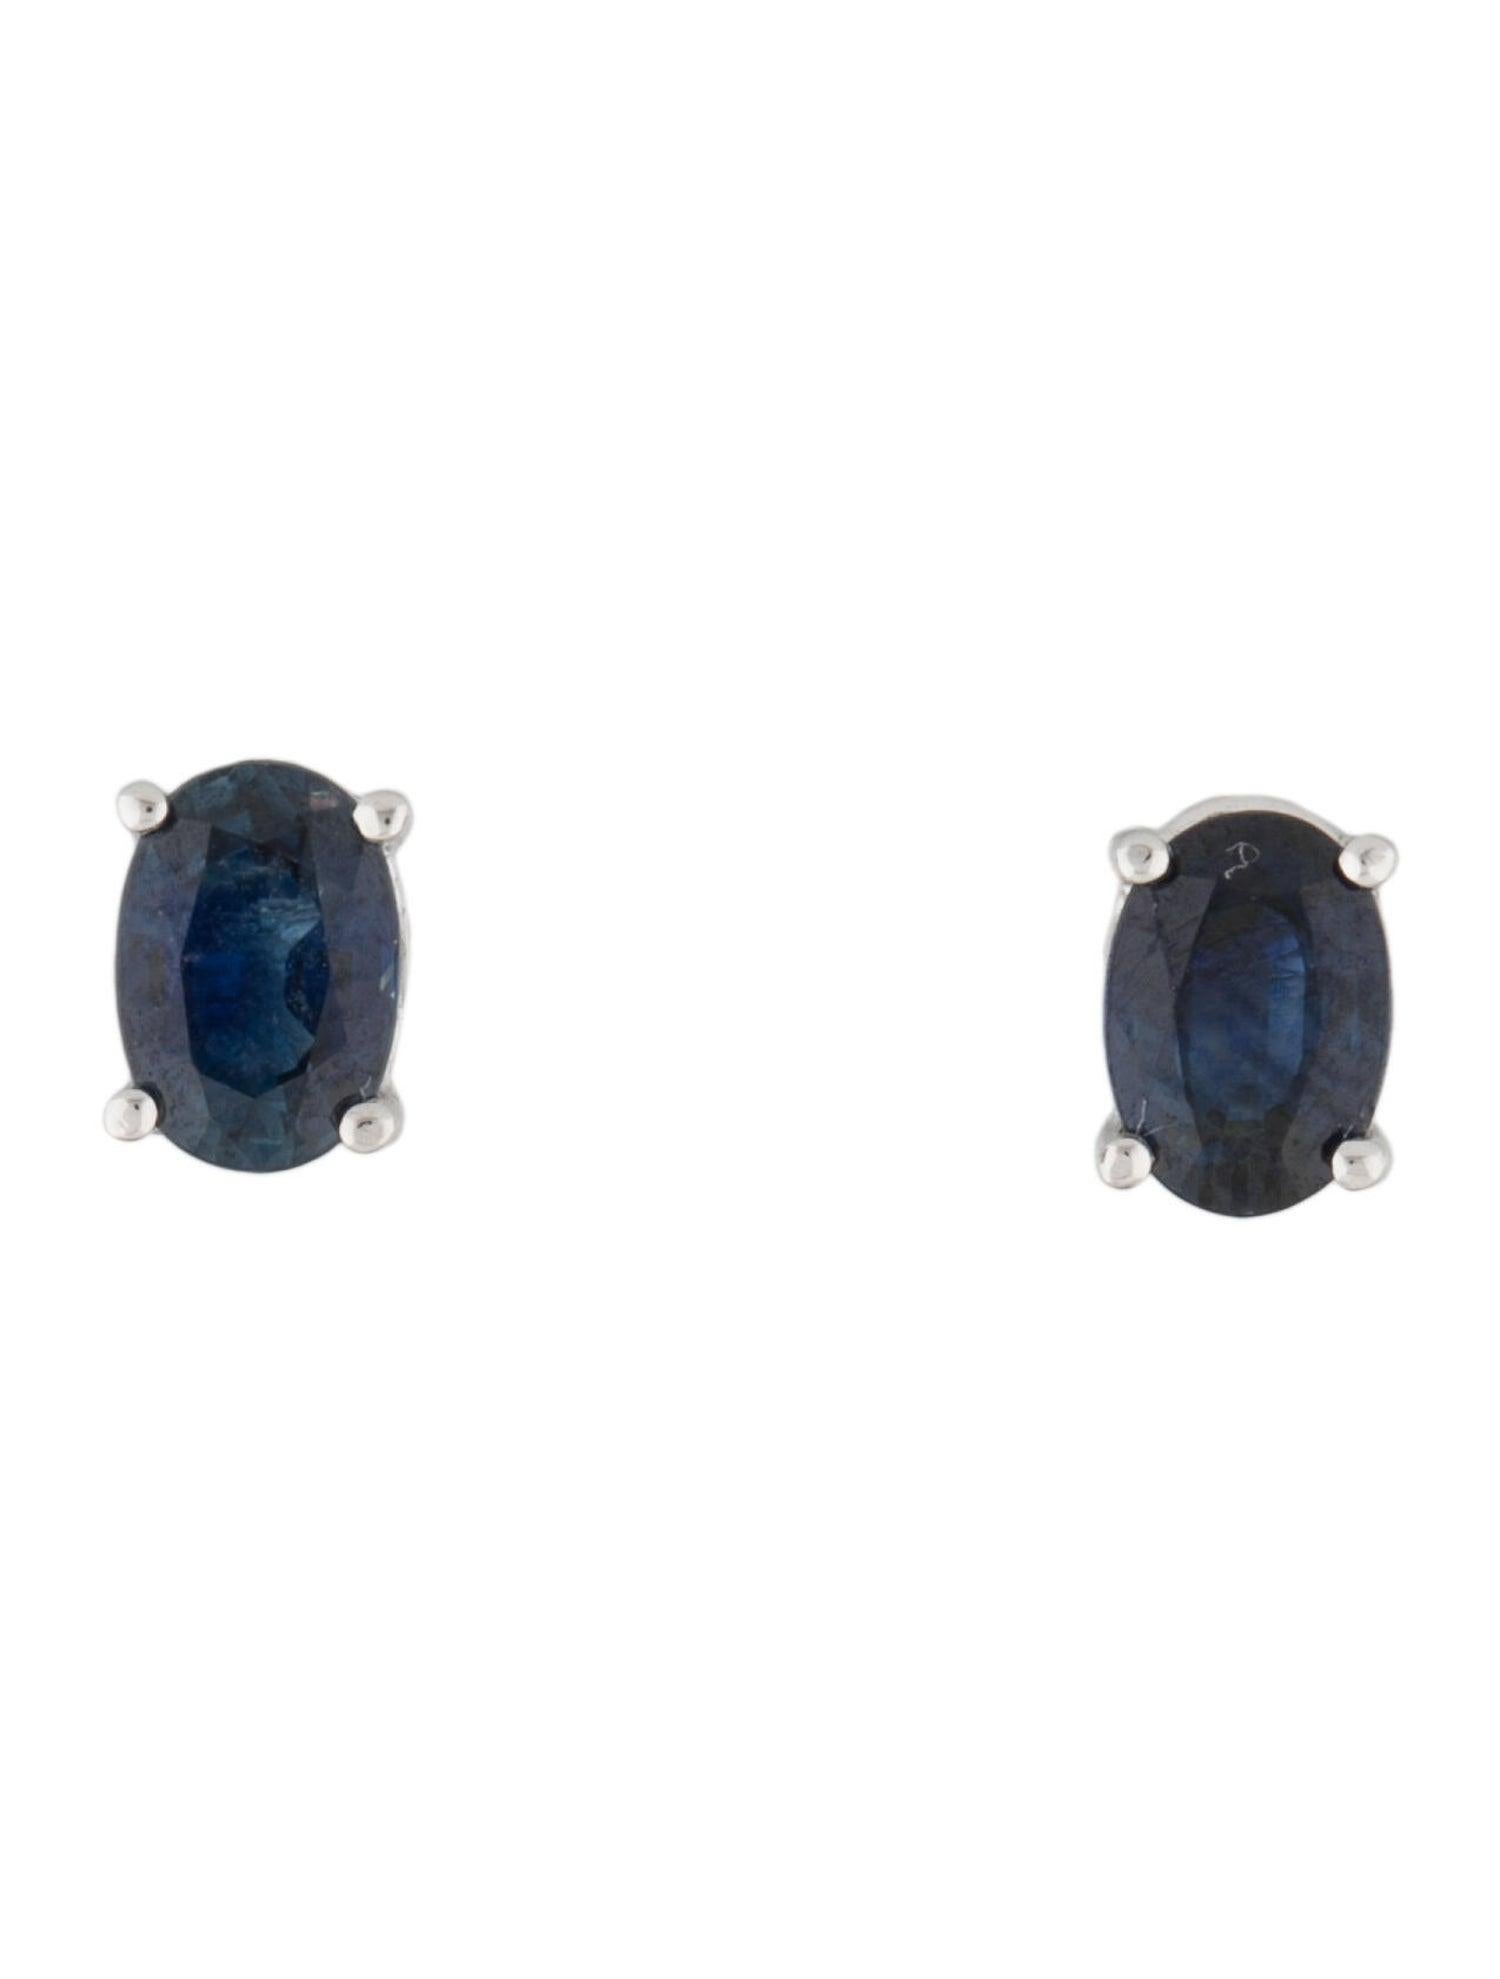 Oval Cut 14 Karat White Gold 1.30 Carat Sapphire Oval Shape Stud Earrings For Sale